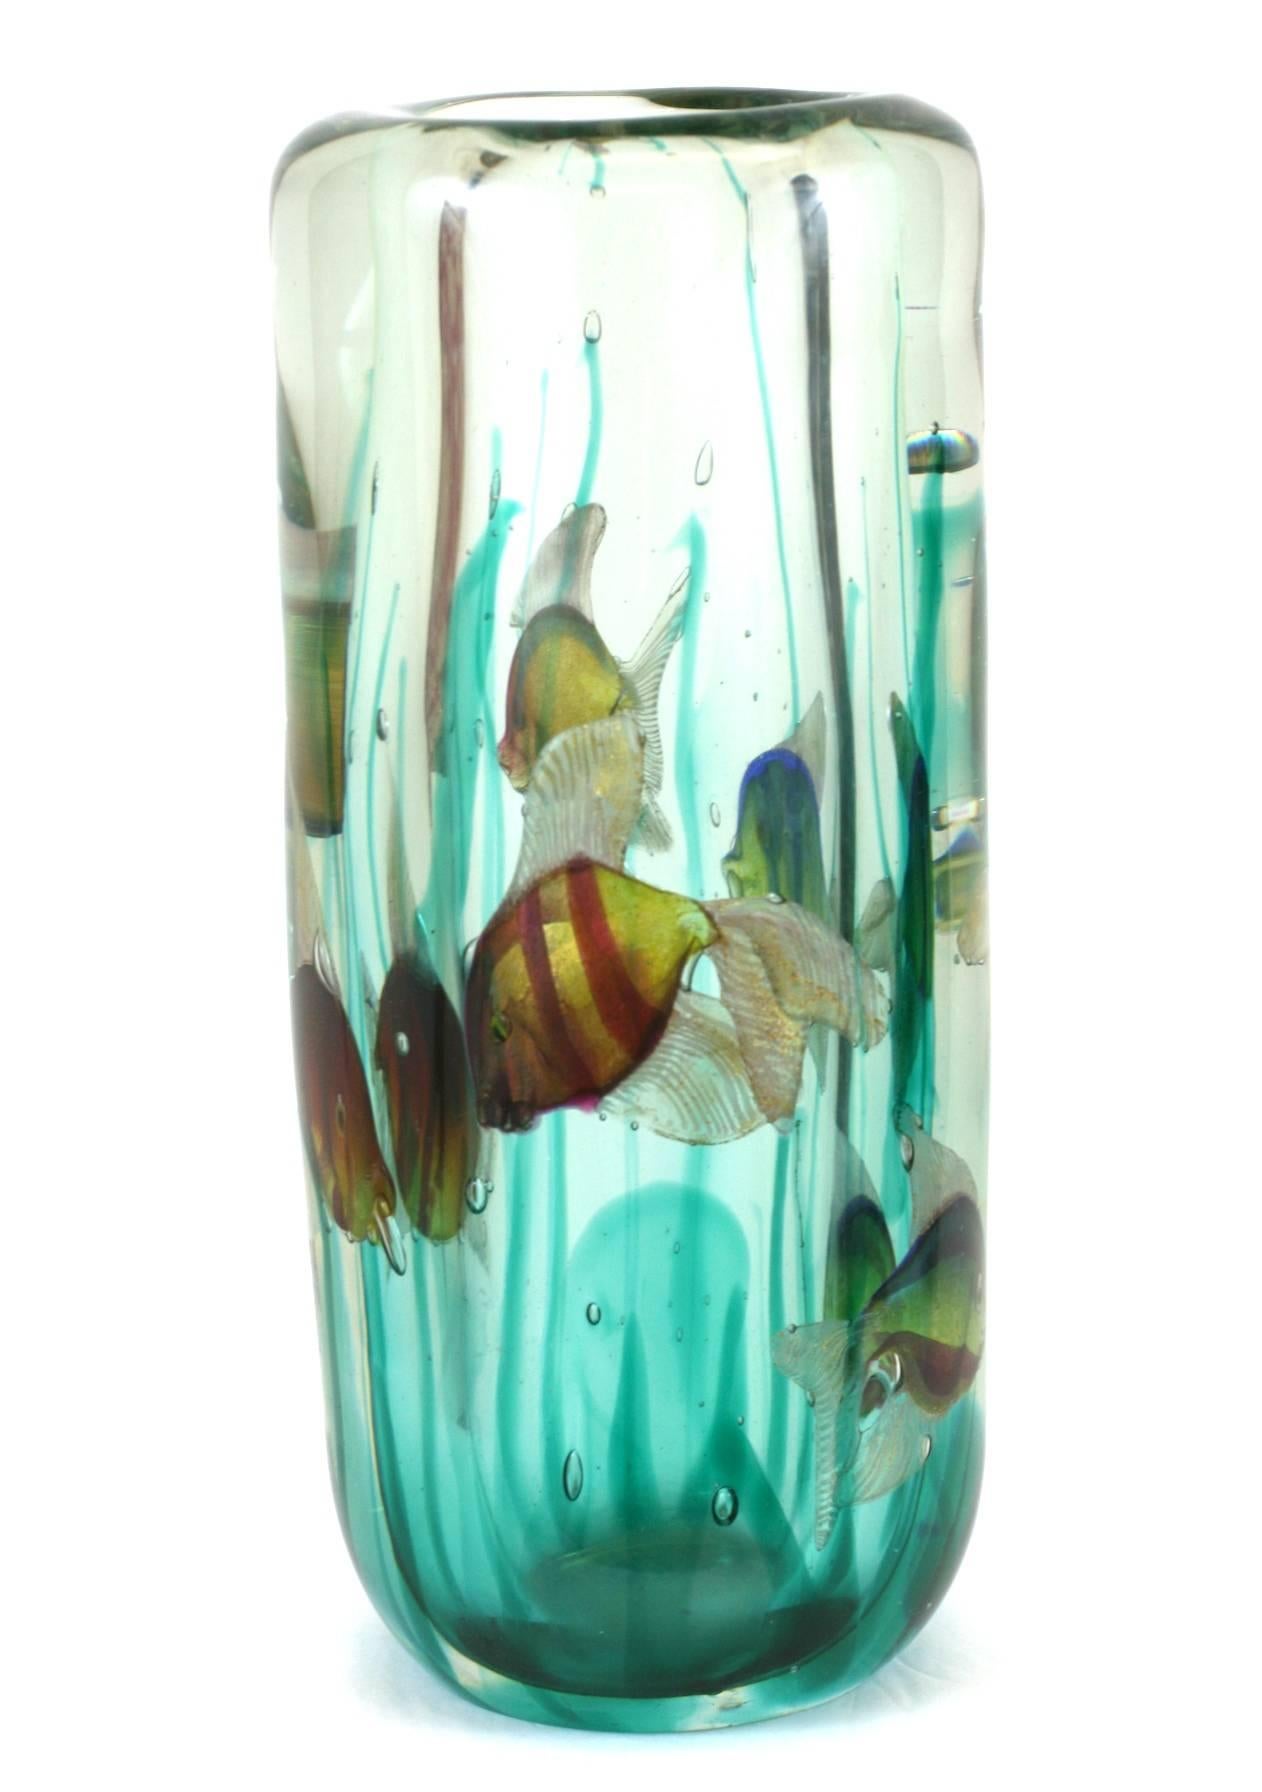 Joli vase d'aquarium Barbini avec base lumineuse originale. Des vrilles d'algues s'élèvent vers le haut et les poissons sont joliment détaillés. Lorsqu'elle est éclairée par le bas, la pièce prend vie.
Les parois en verre mesurent 1,5